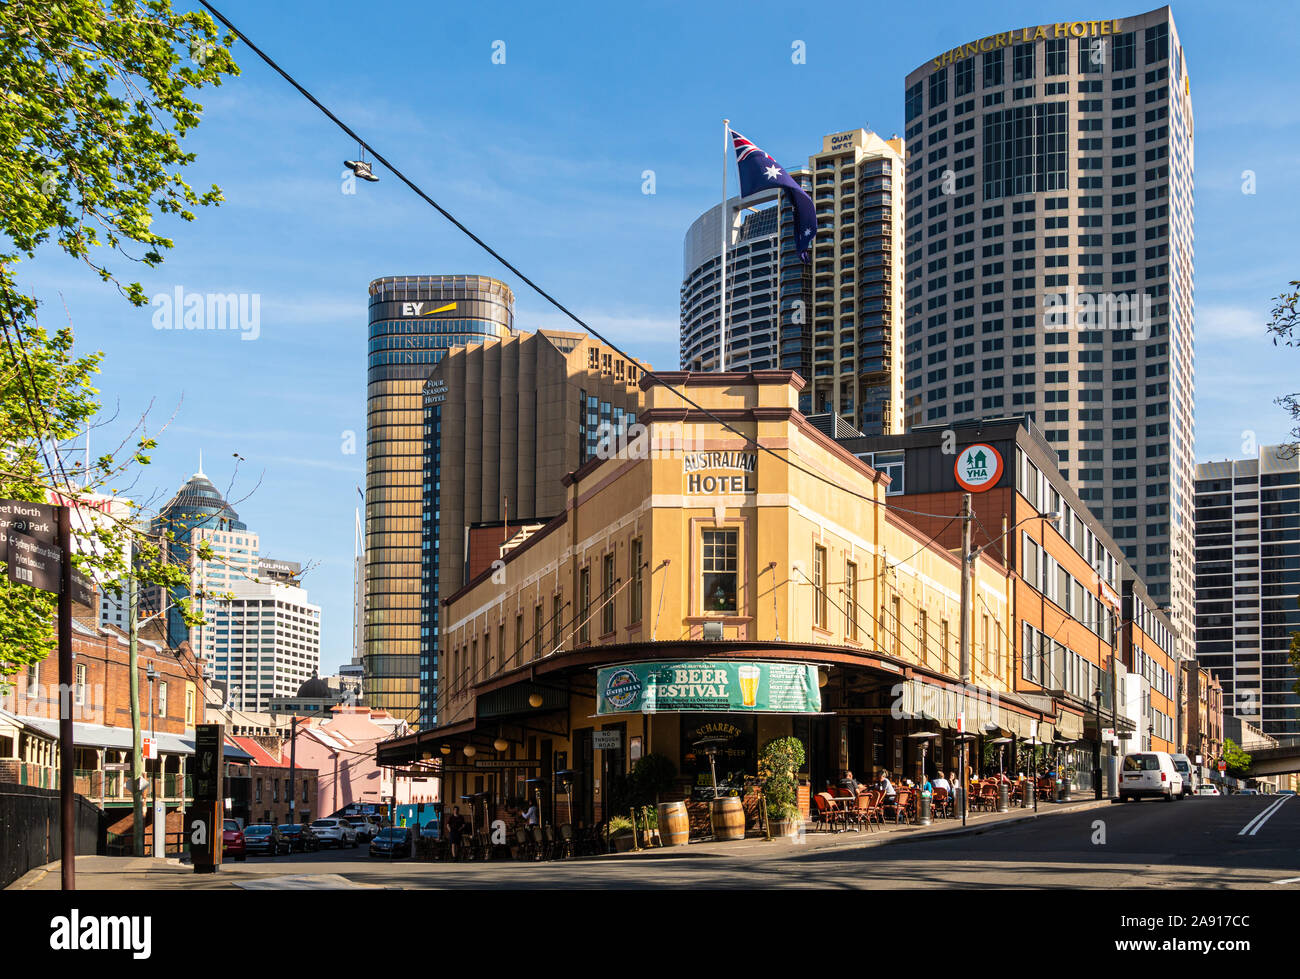 Sydney, Australia - El 3 de octubre de 2019: La arquitectura tradicional del Patrimonio Australiano y pub del hotel contrasta con modernas torres en el Sydney R Foto de stock